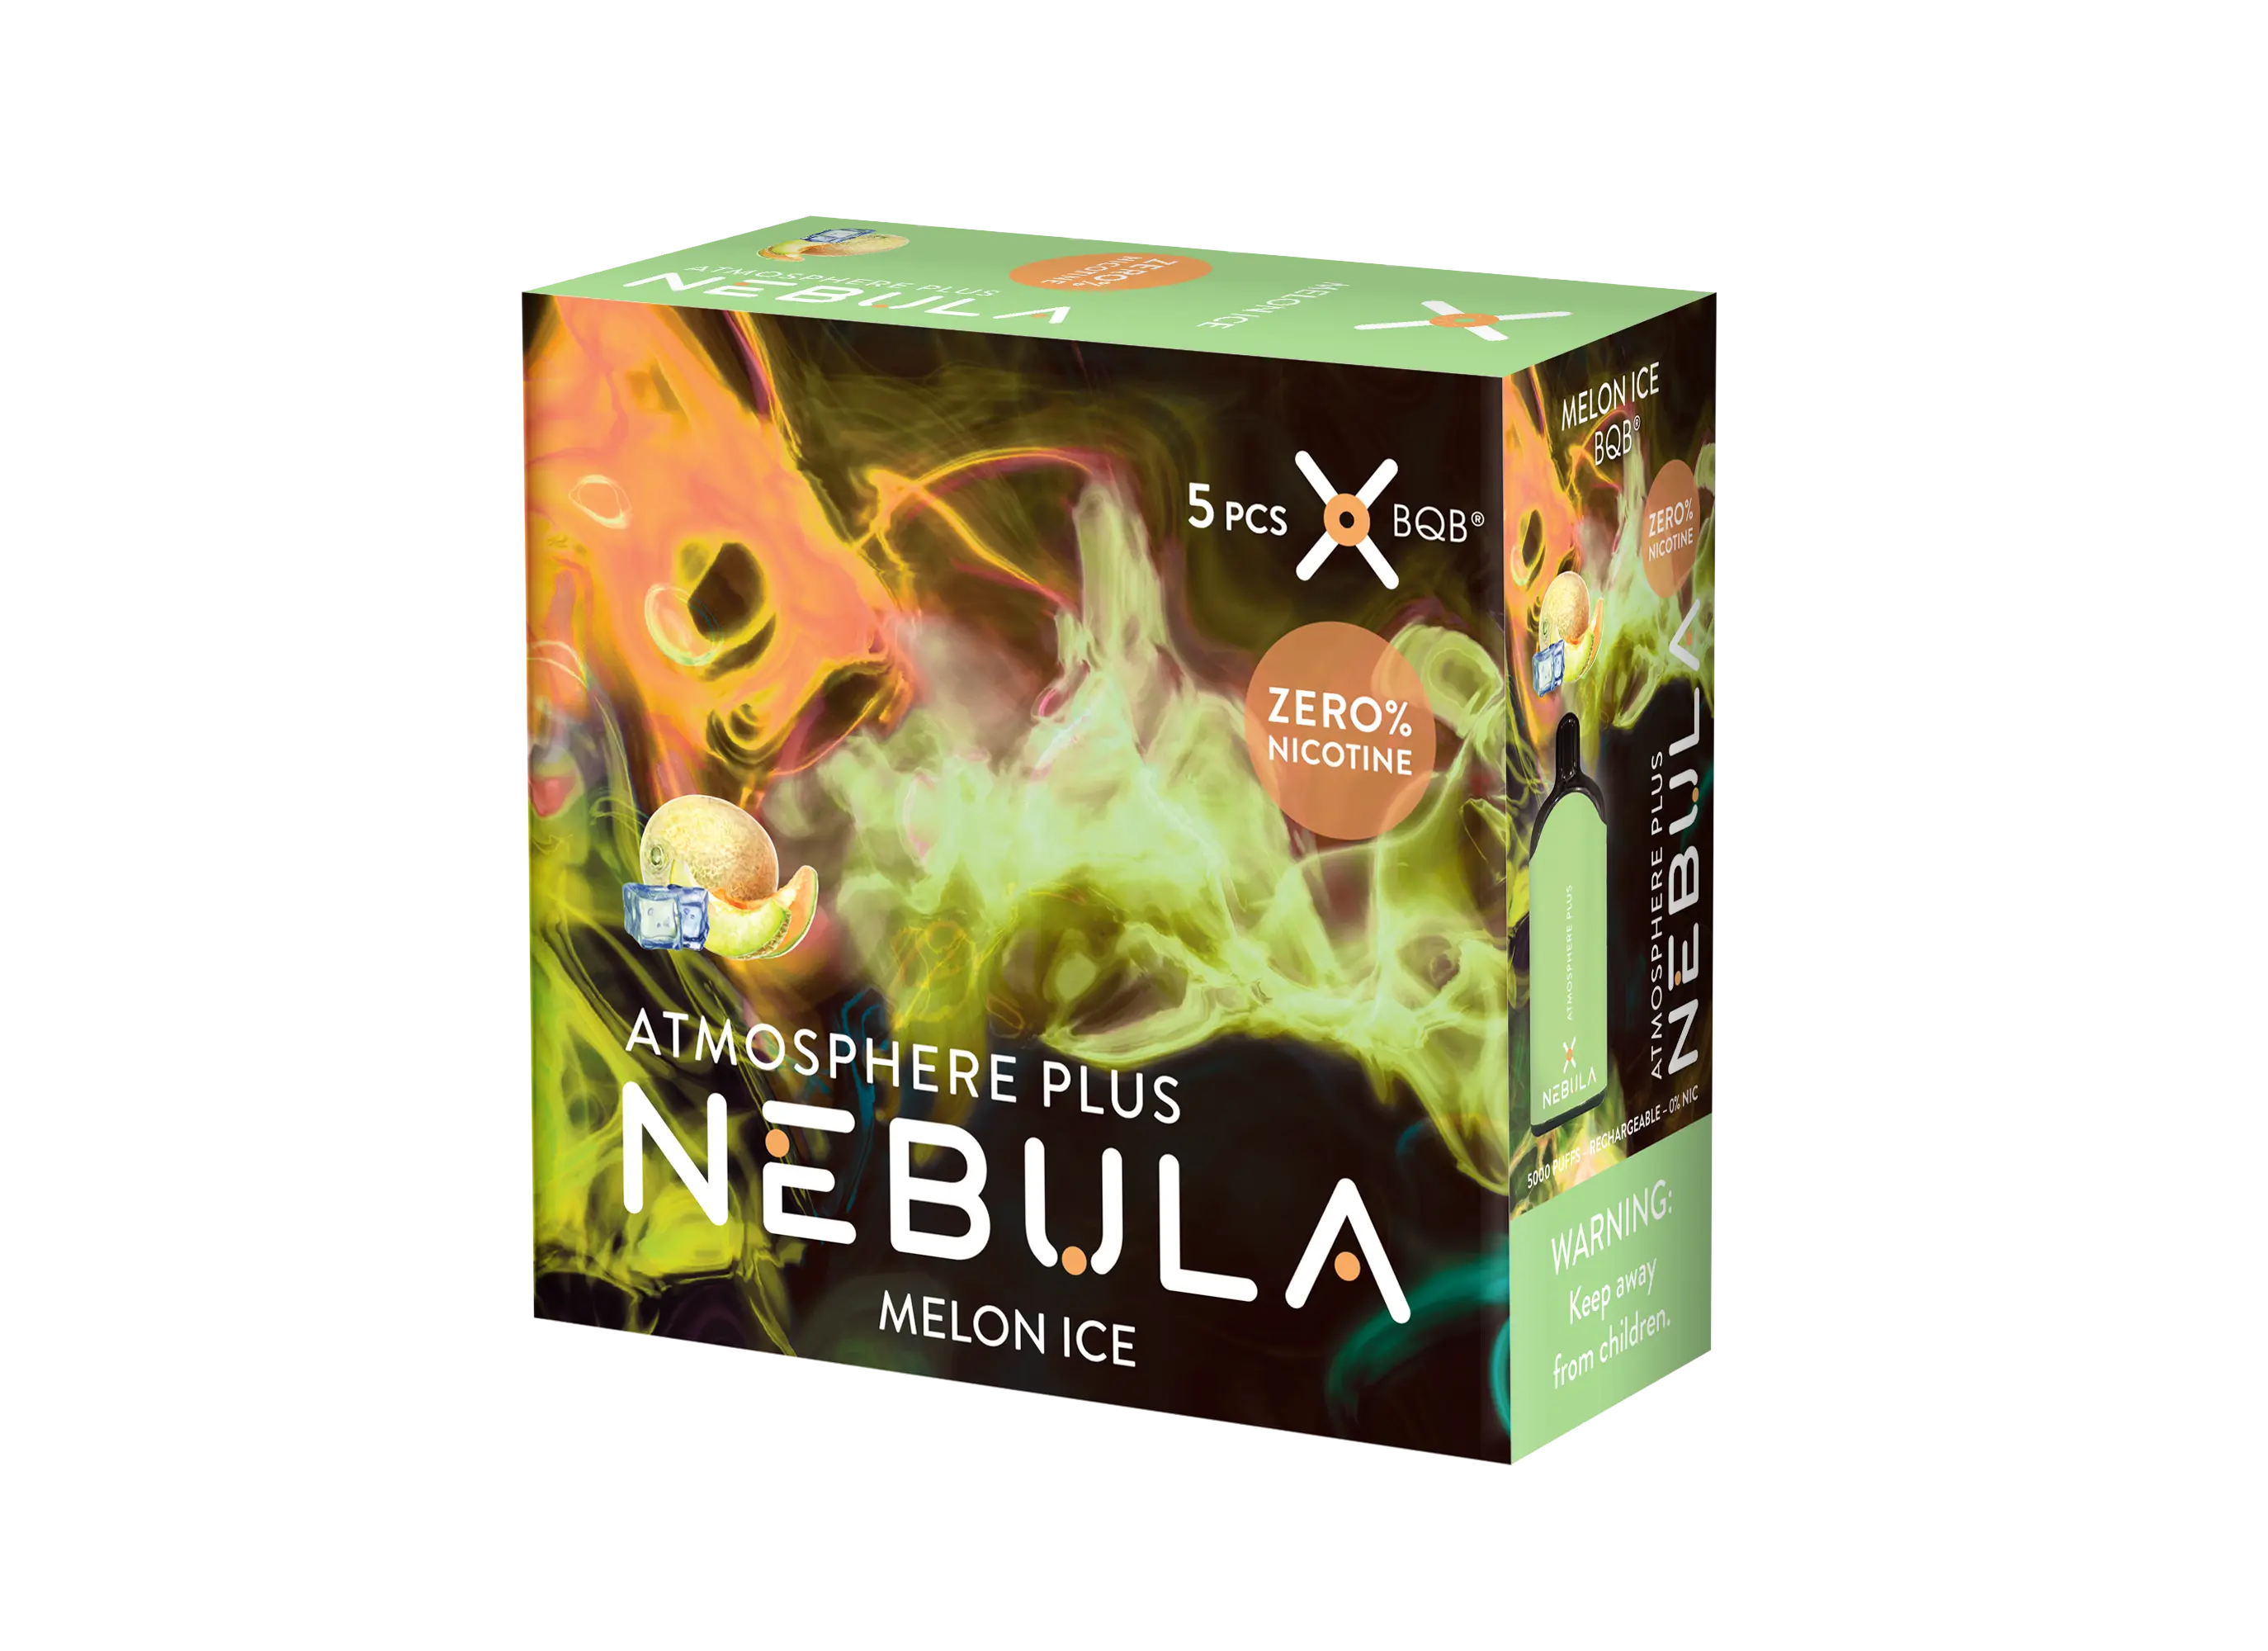 Nebula Atmosphere Plus 0% 5000 Puffs - Melon Ice - B2B Nebula